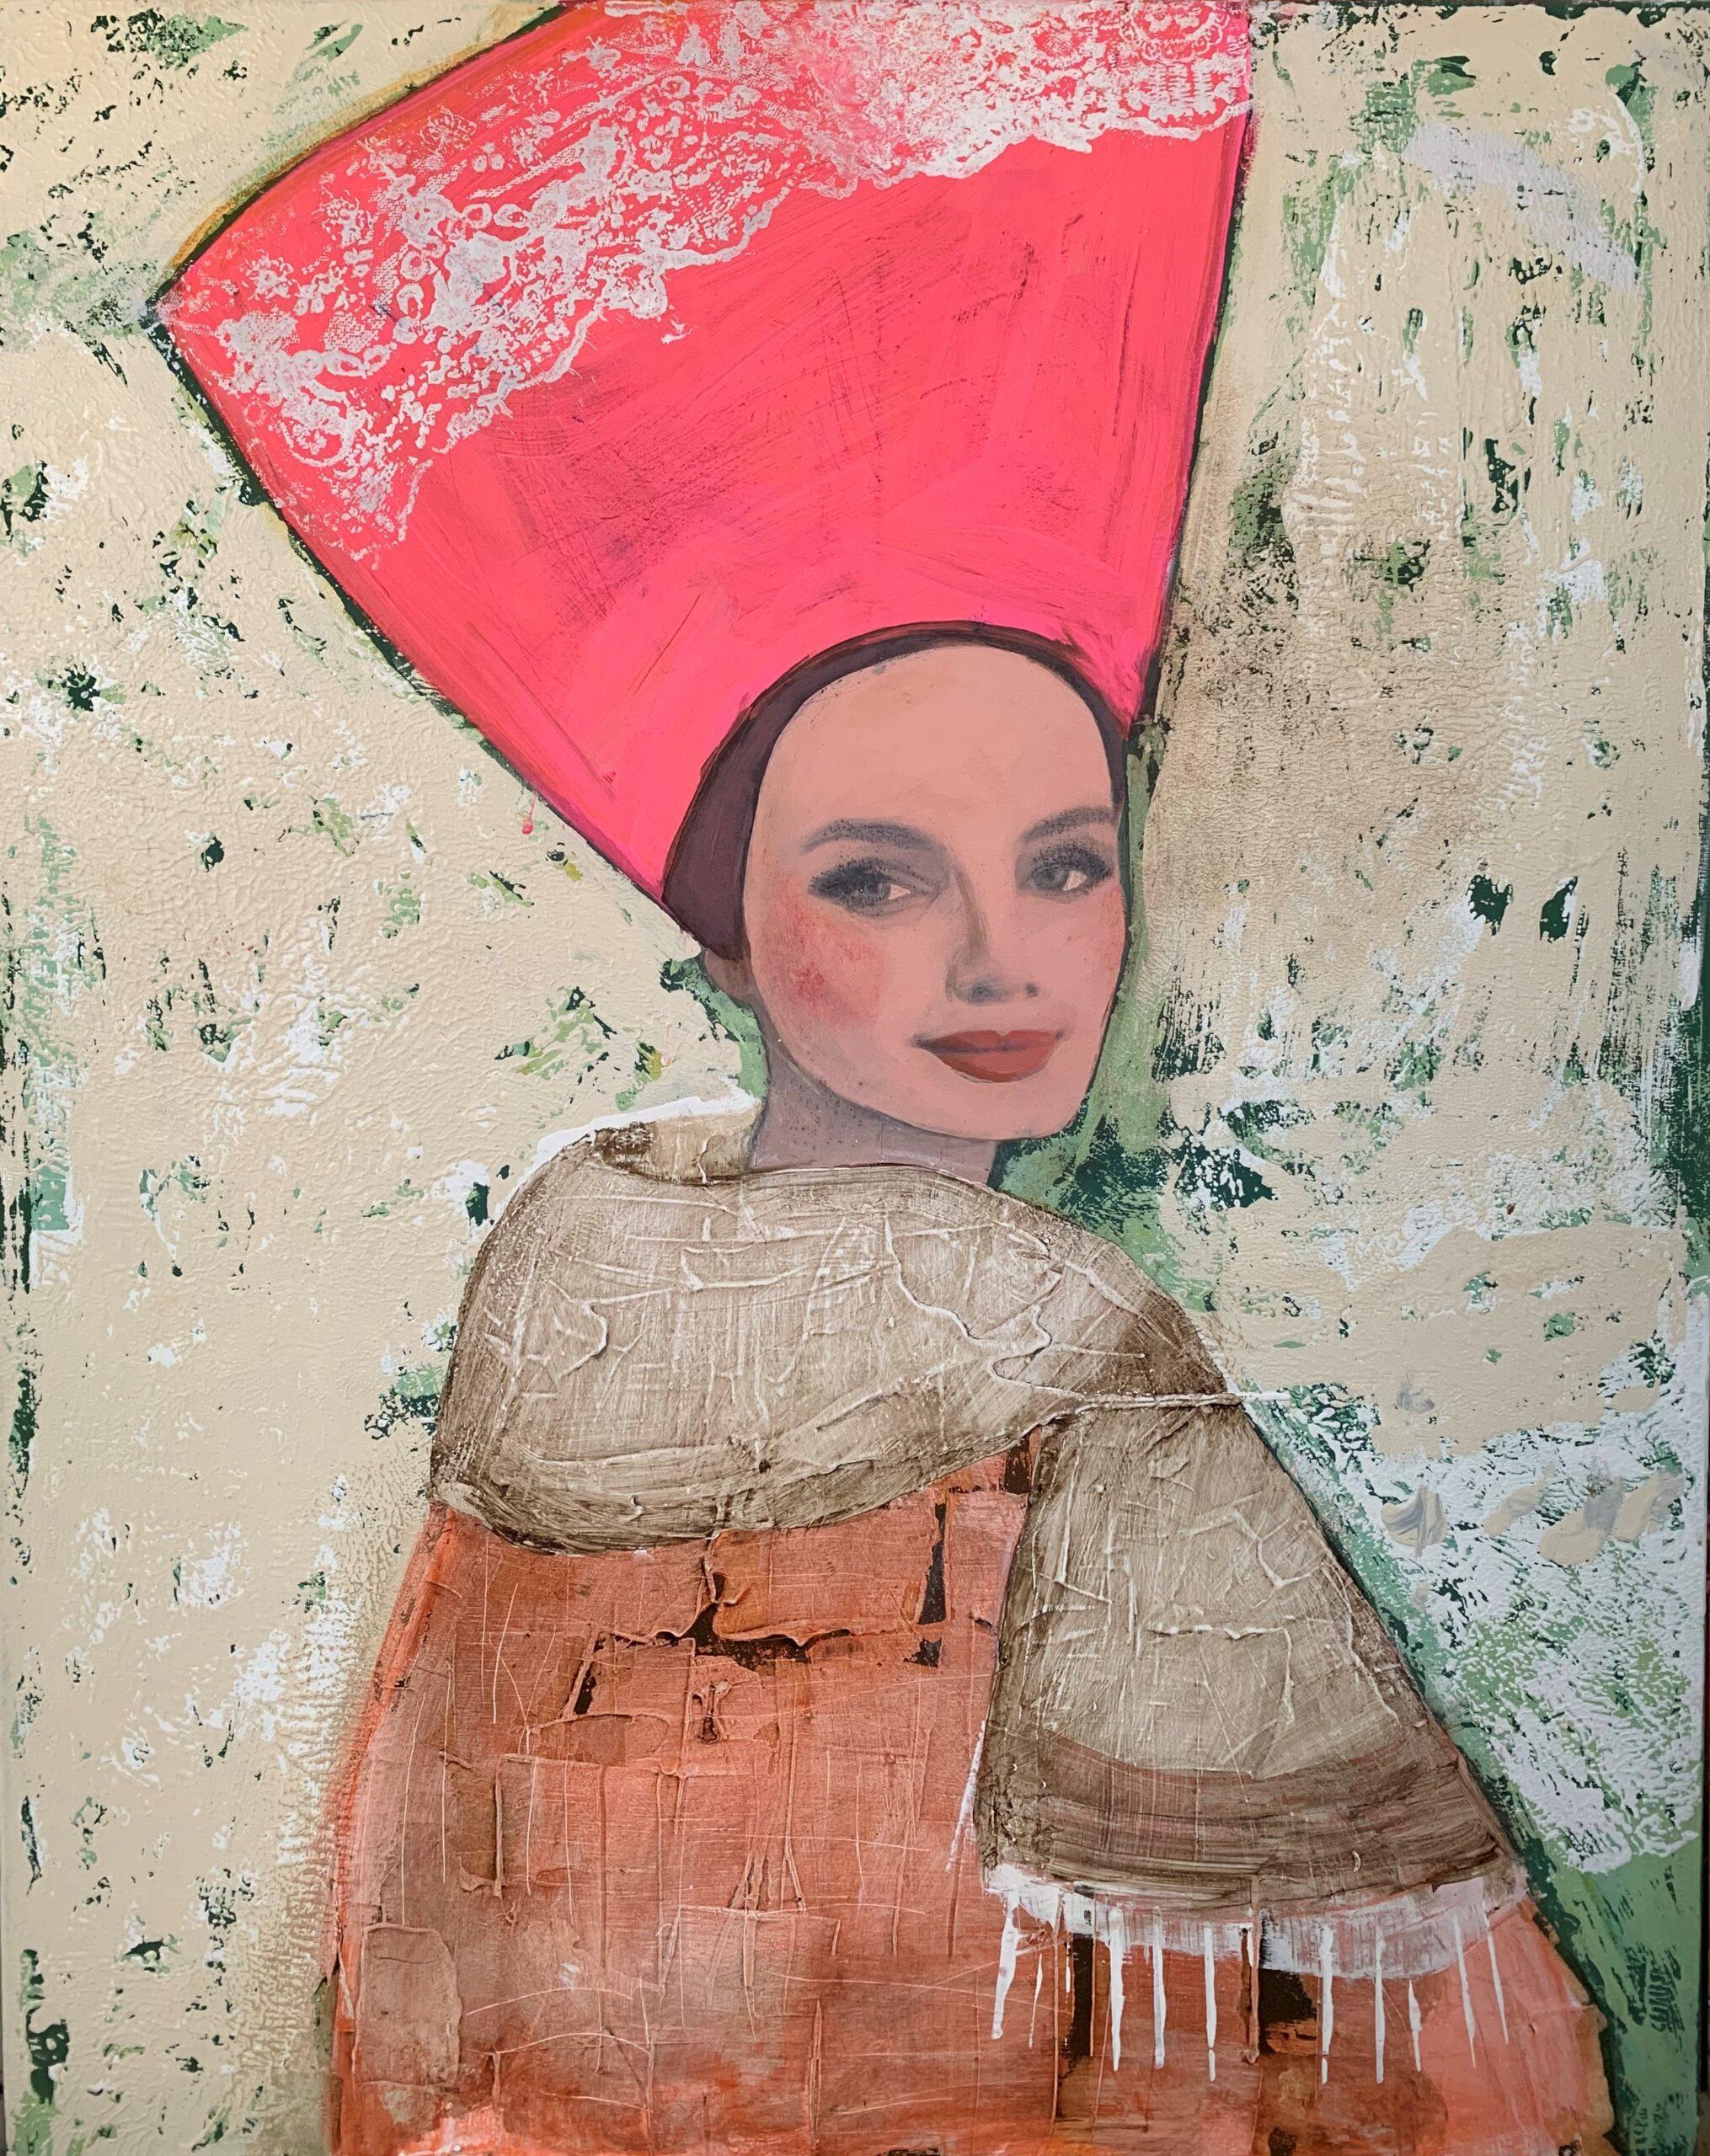 Nicolle Menegaldo Portrait Painting - Woman with Pink Headdress - Bright Colour Portrait, Women, Texture, Face